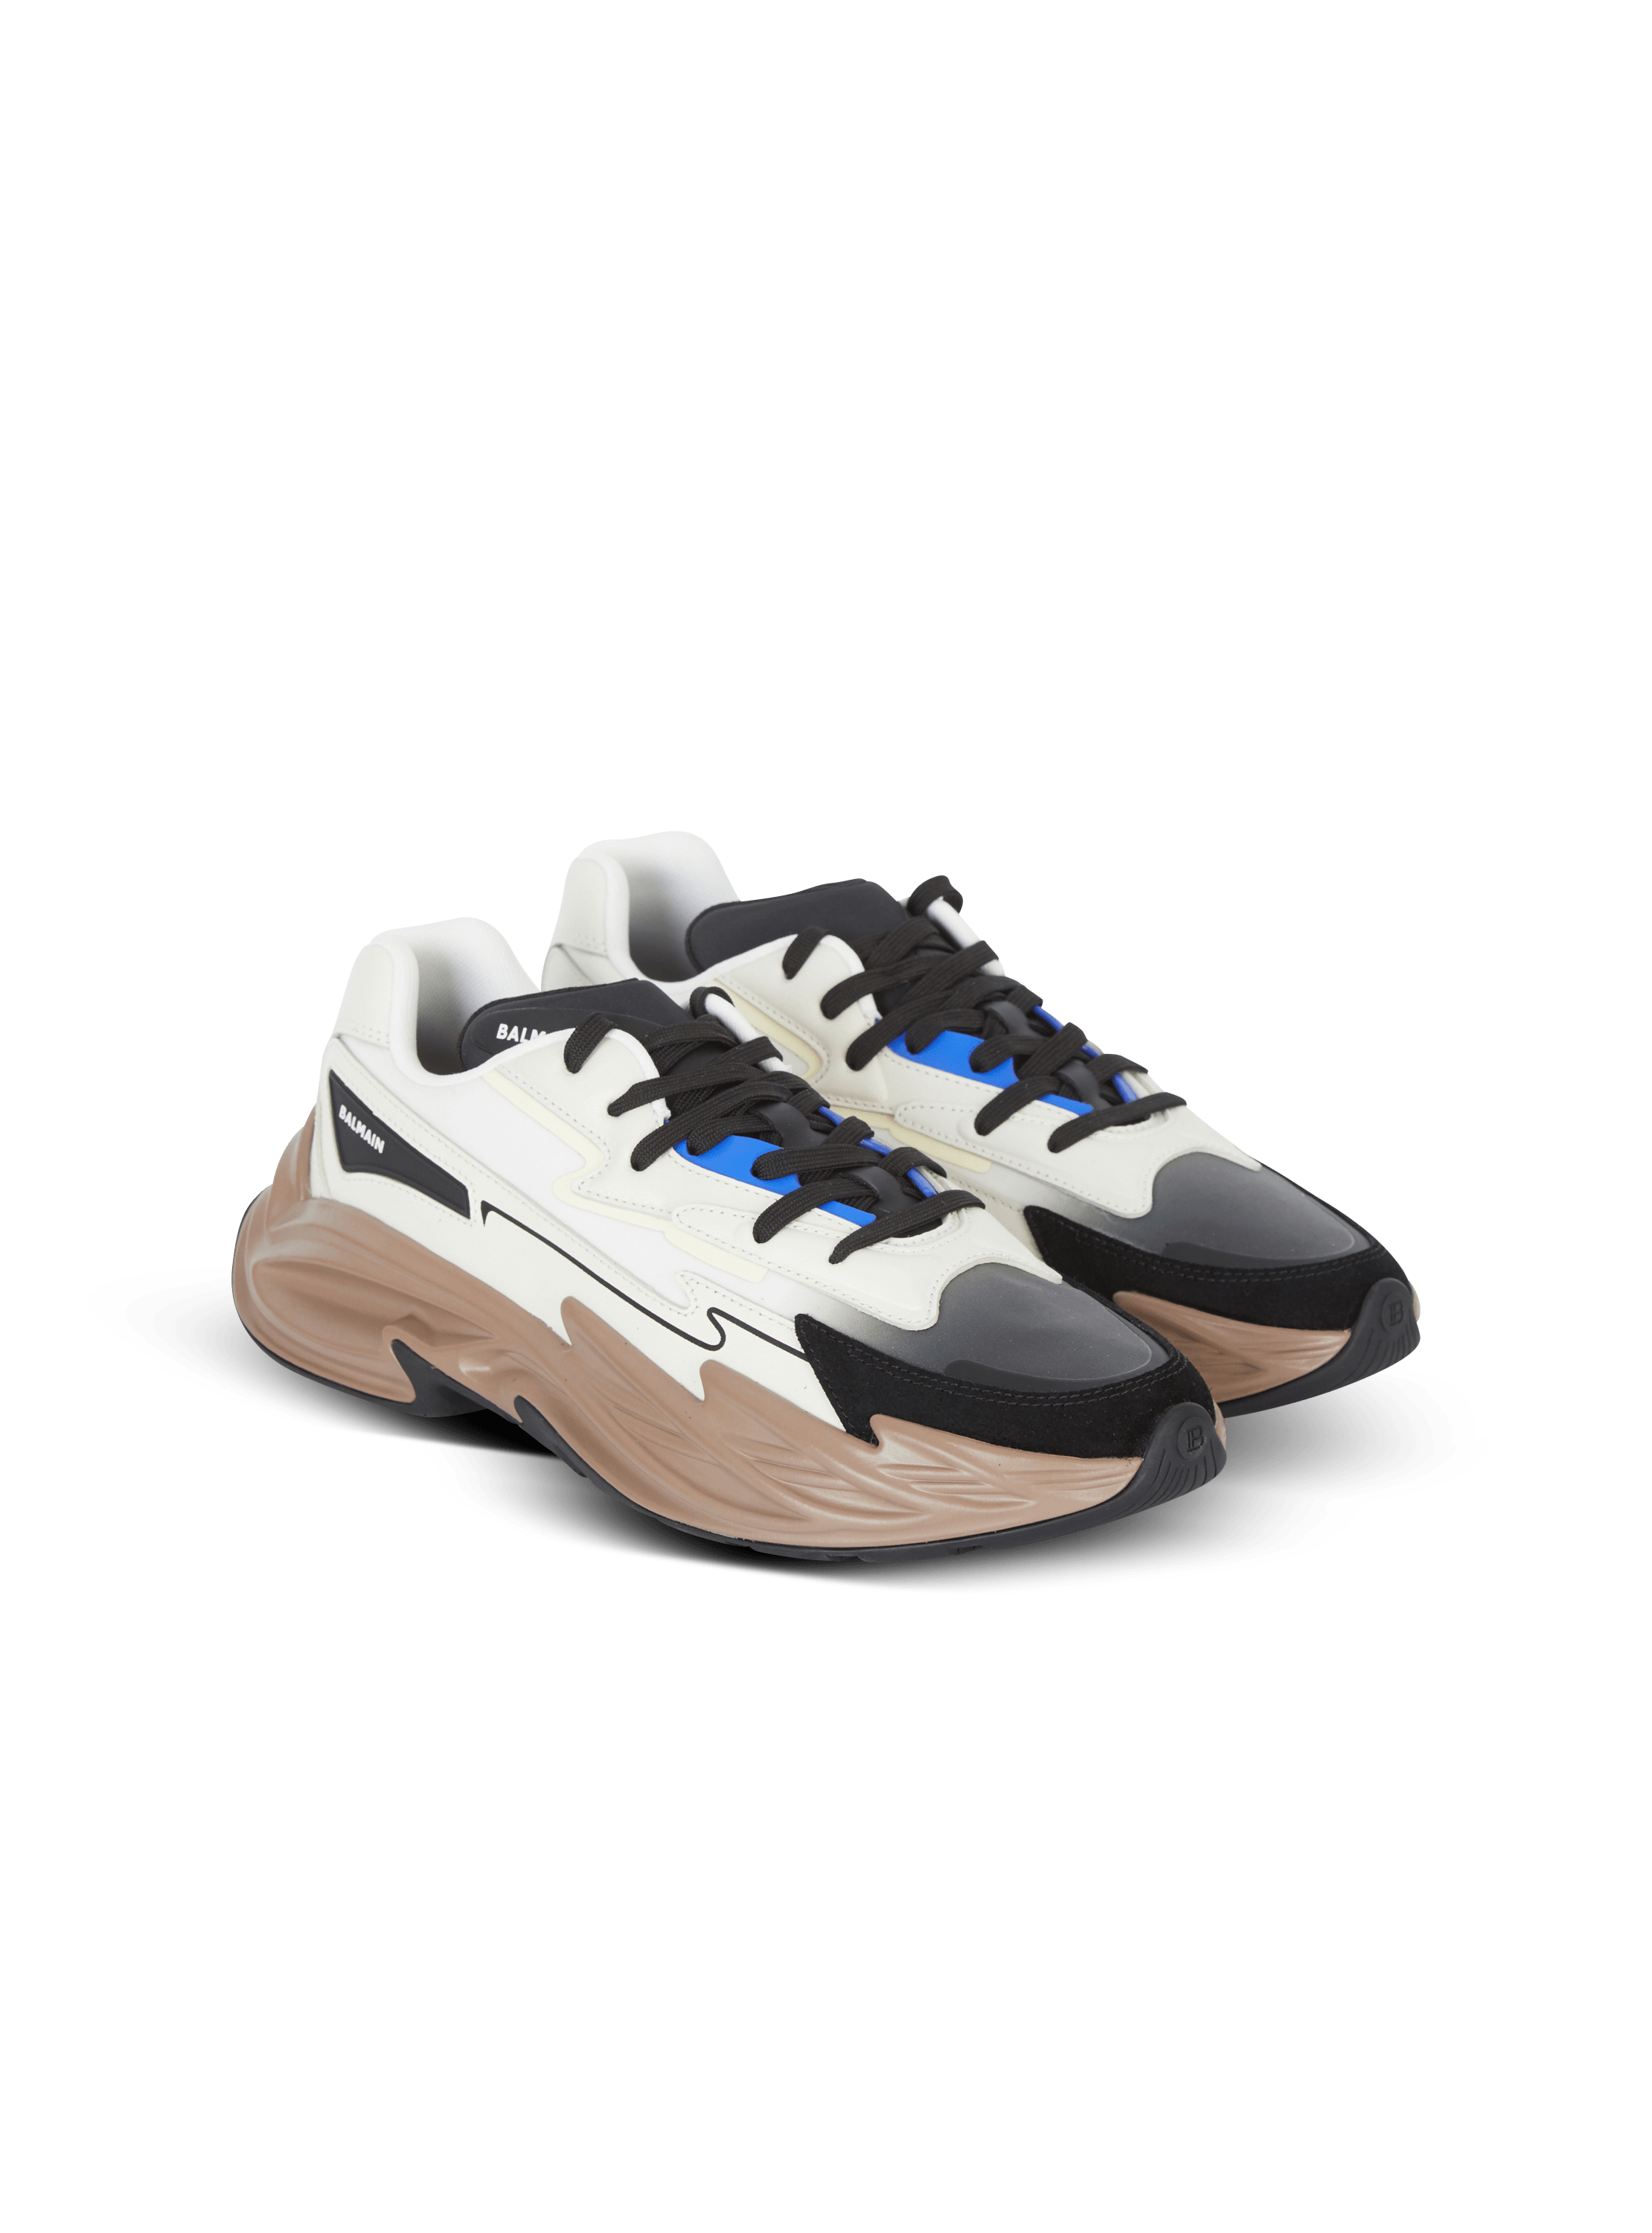 Run-Row leather sneakers